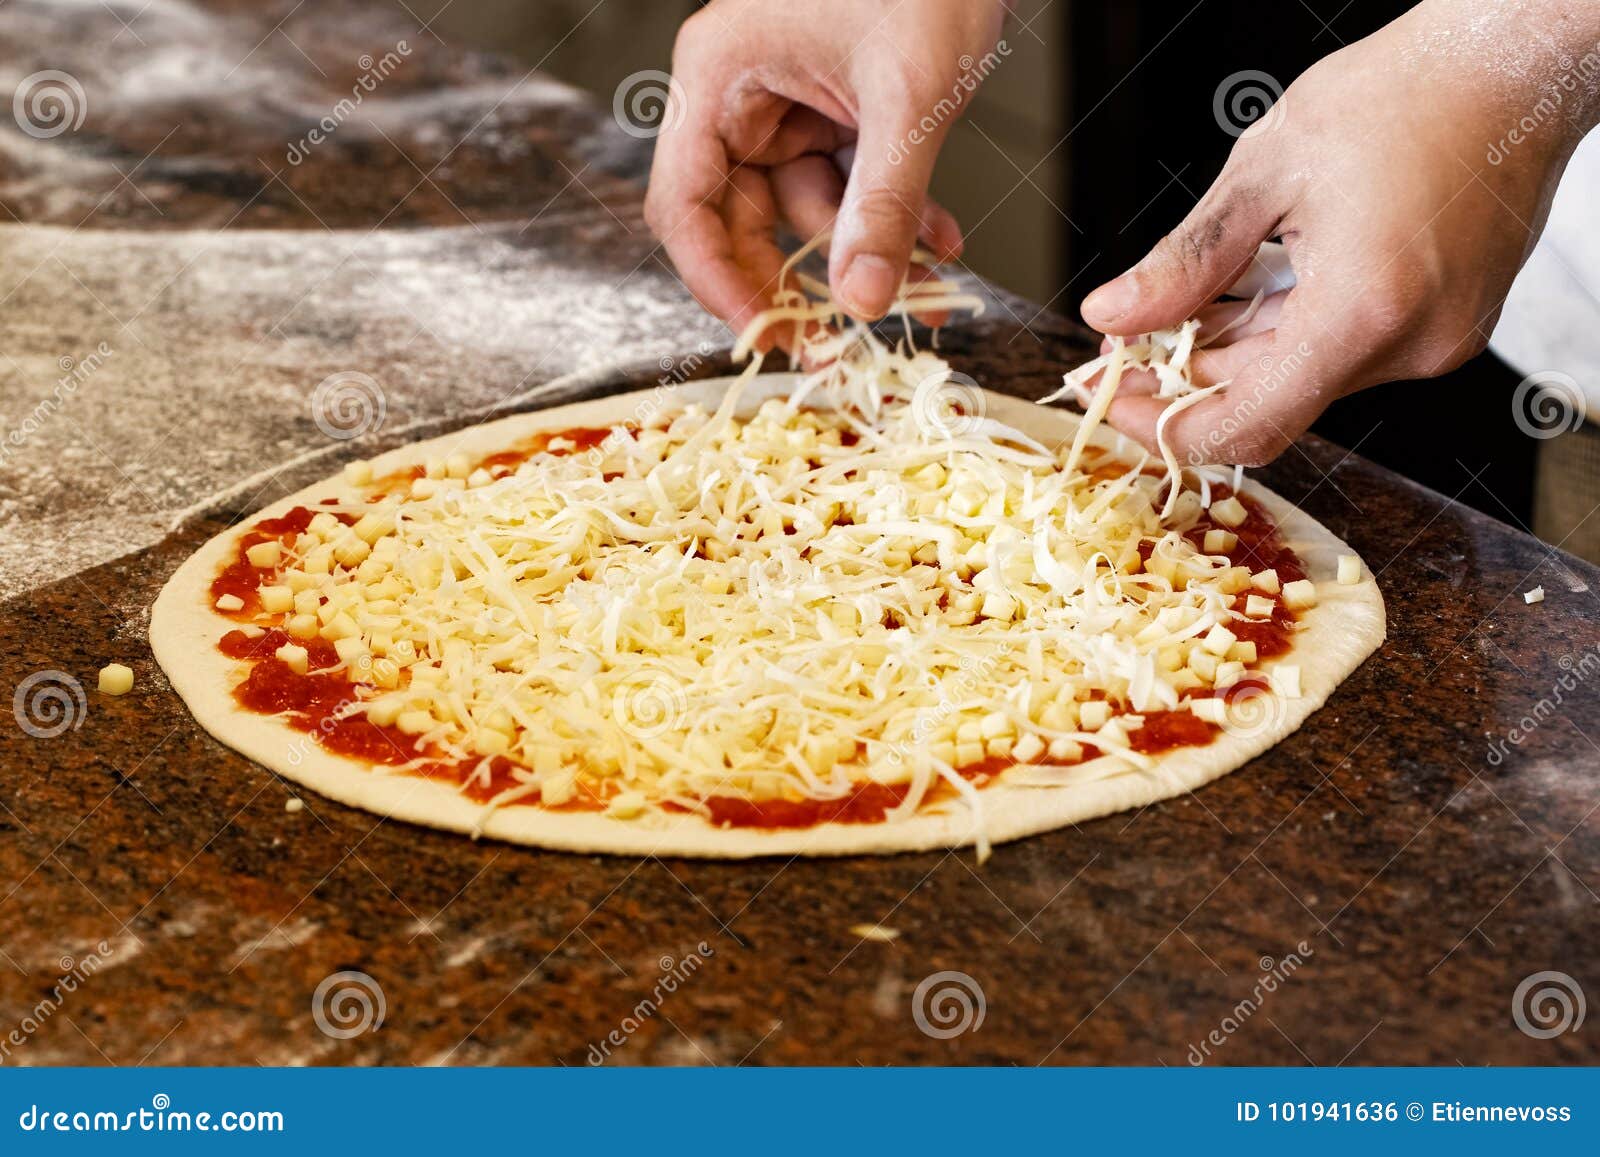 когда кладут сыр в пиццу в духовке (120) фото